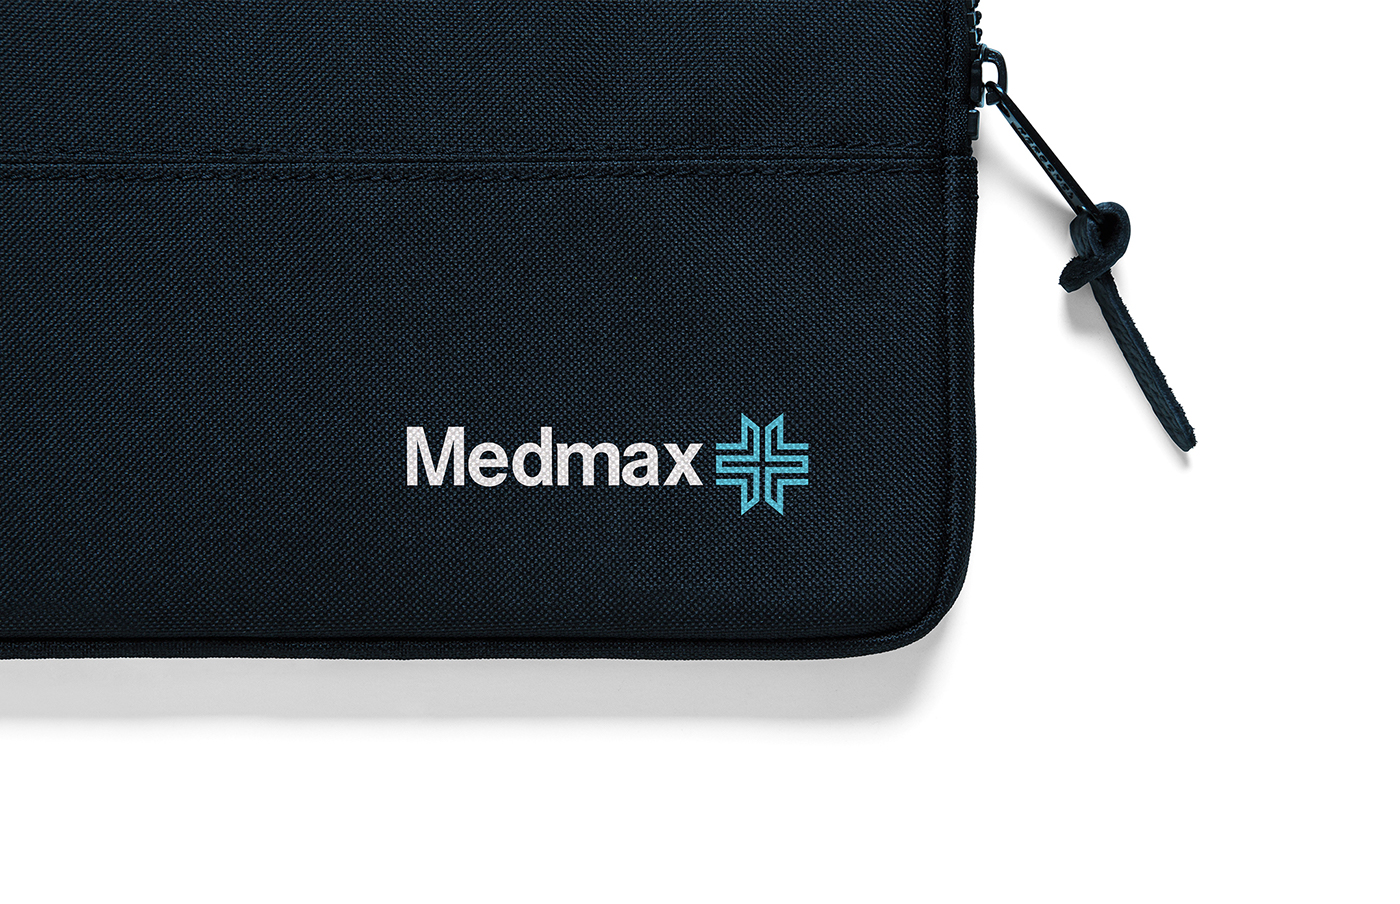 about design Medmax mexico brand monterrey logo